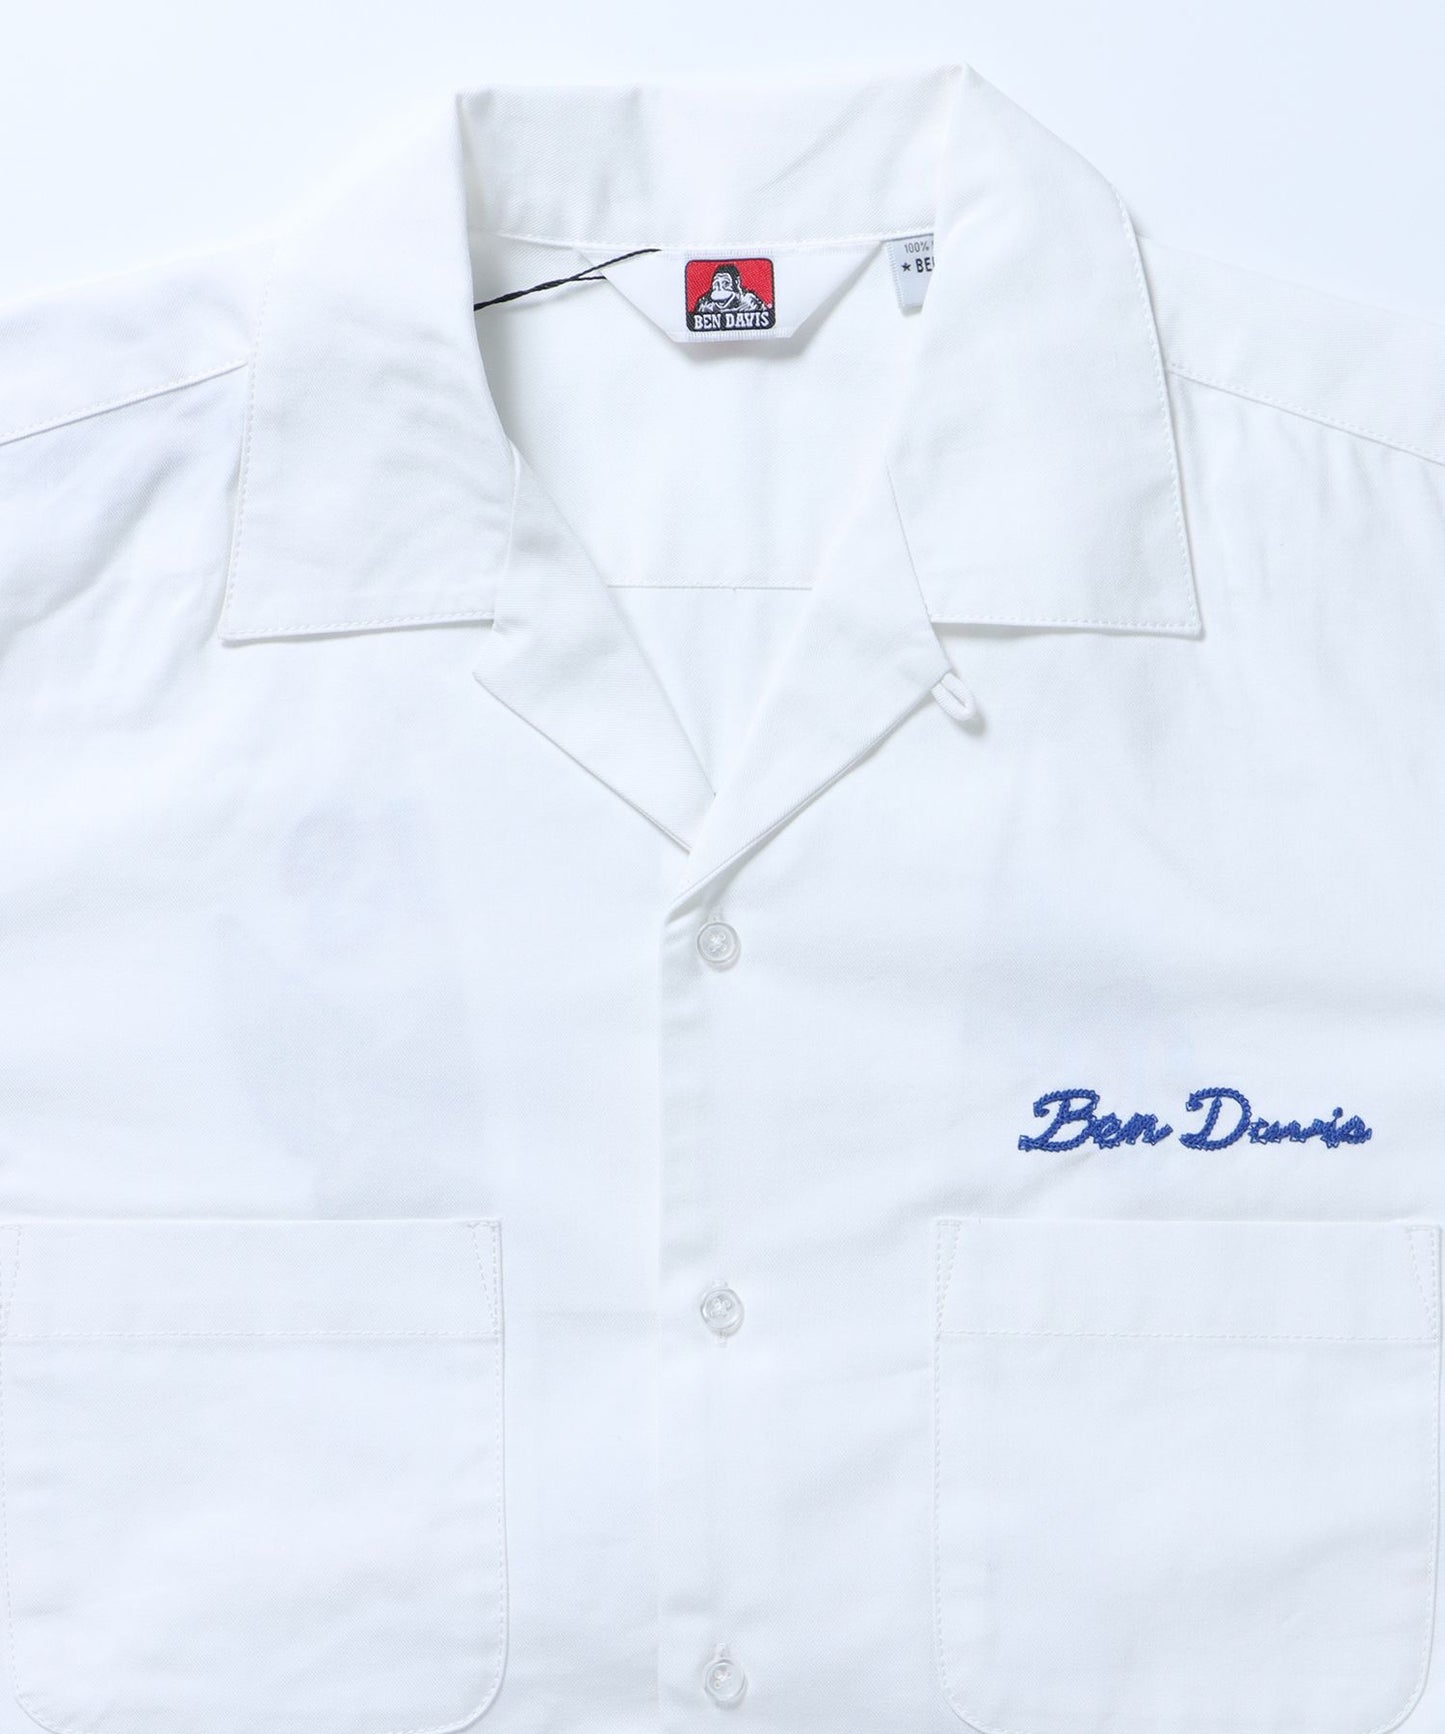 【BEN DAVIS(ベンデイビス)】 BREAKSHOT EMB SHIRT / チェック 古着 刺繍 オープンカラーシャツ ビリヤード オフホワイト